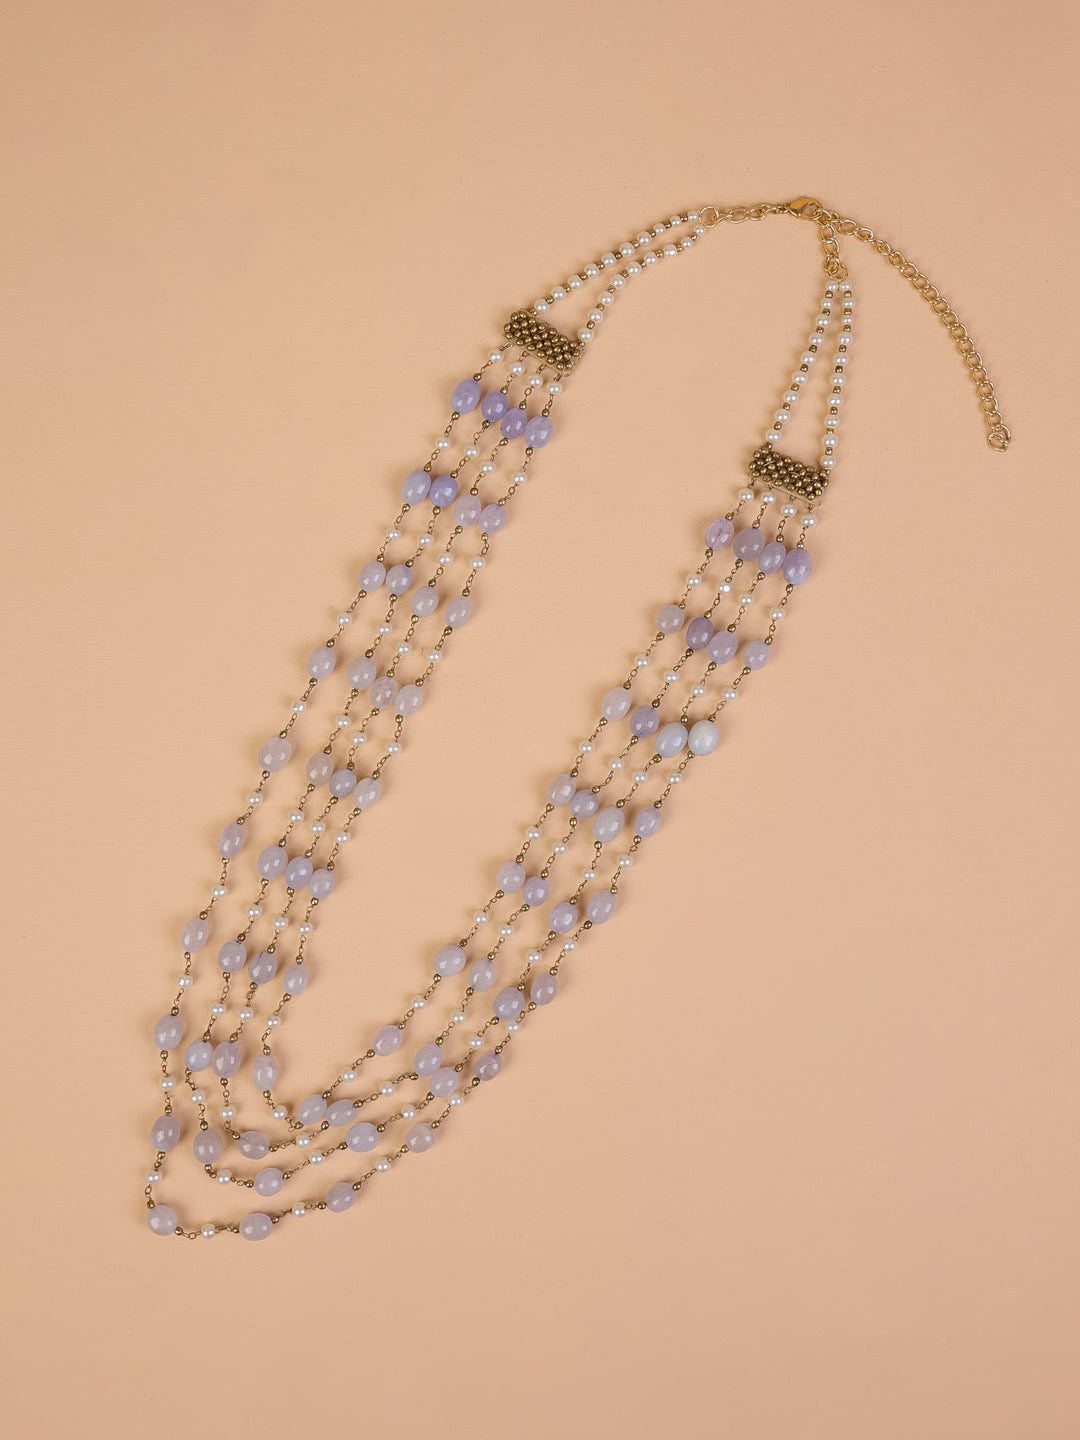 4 Layered Ivory & Blue Beads Mala